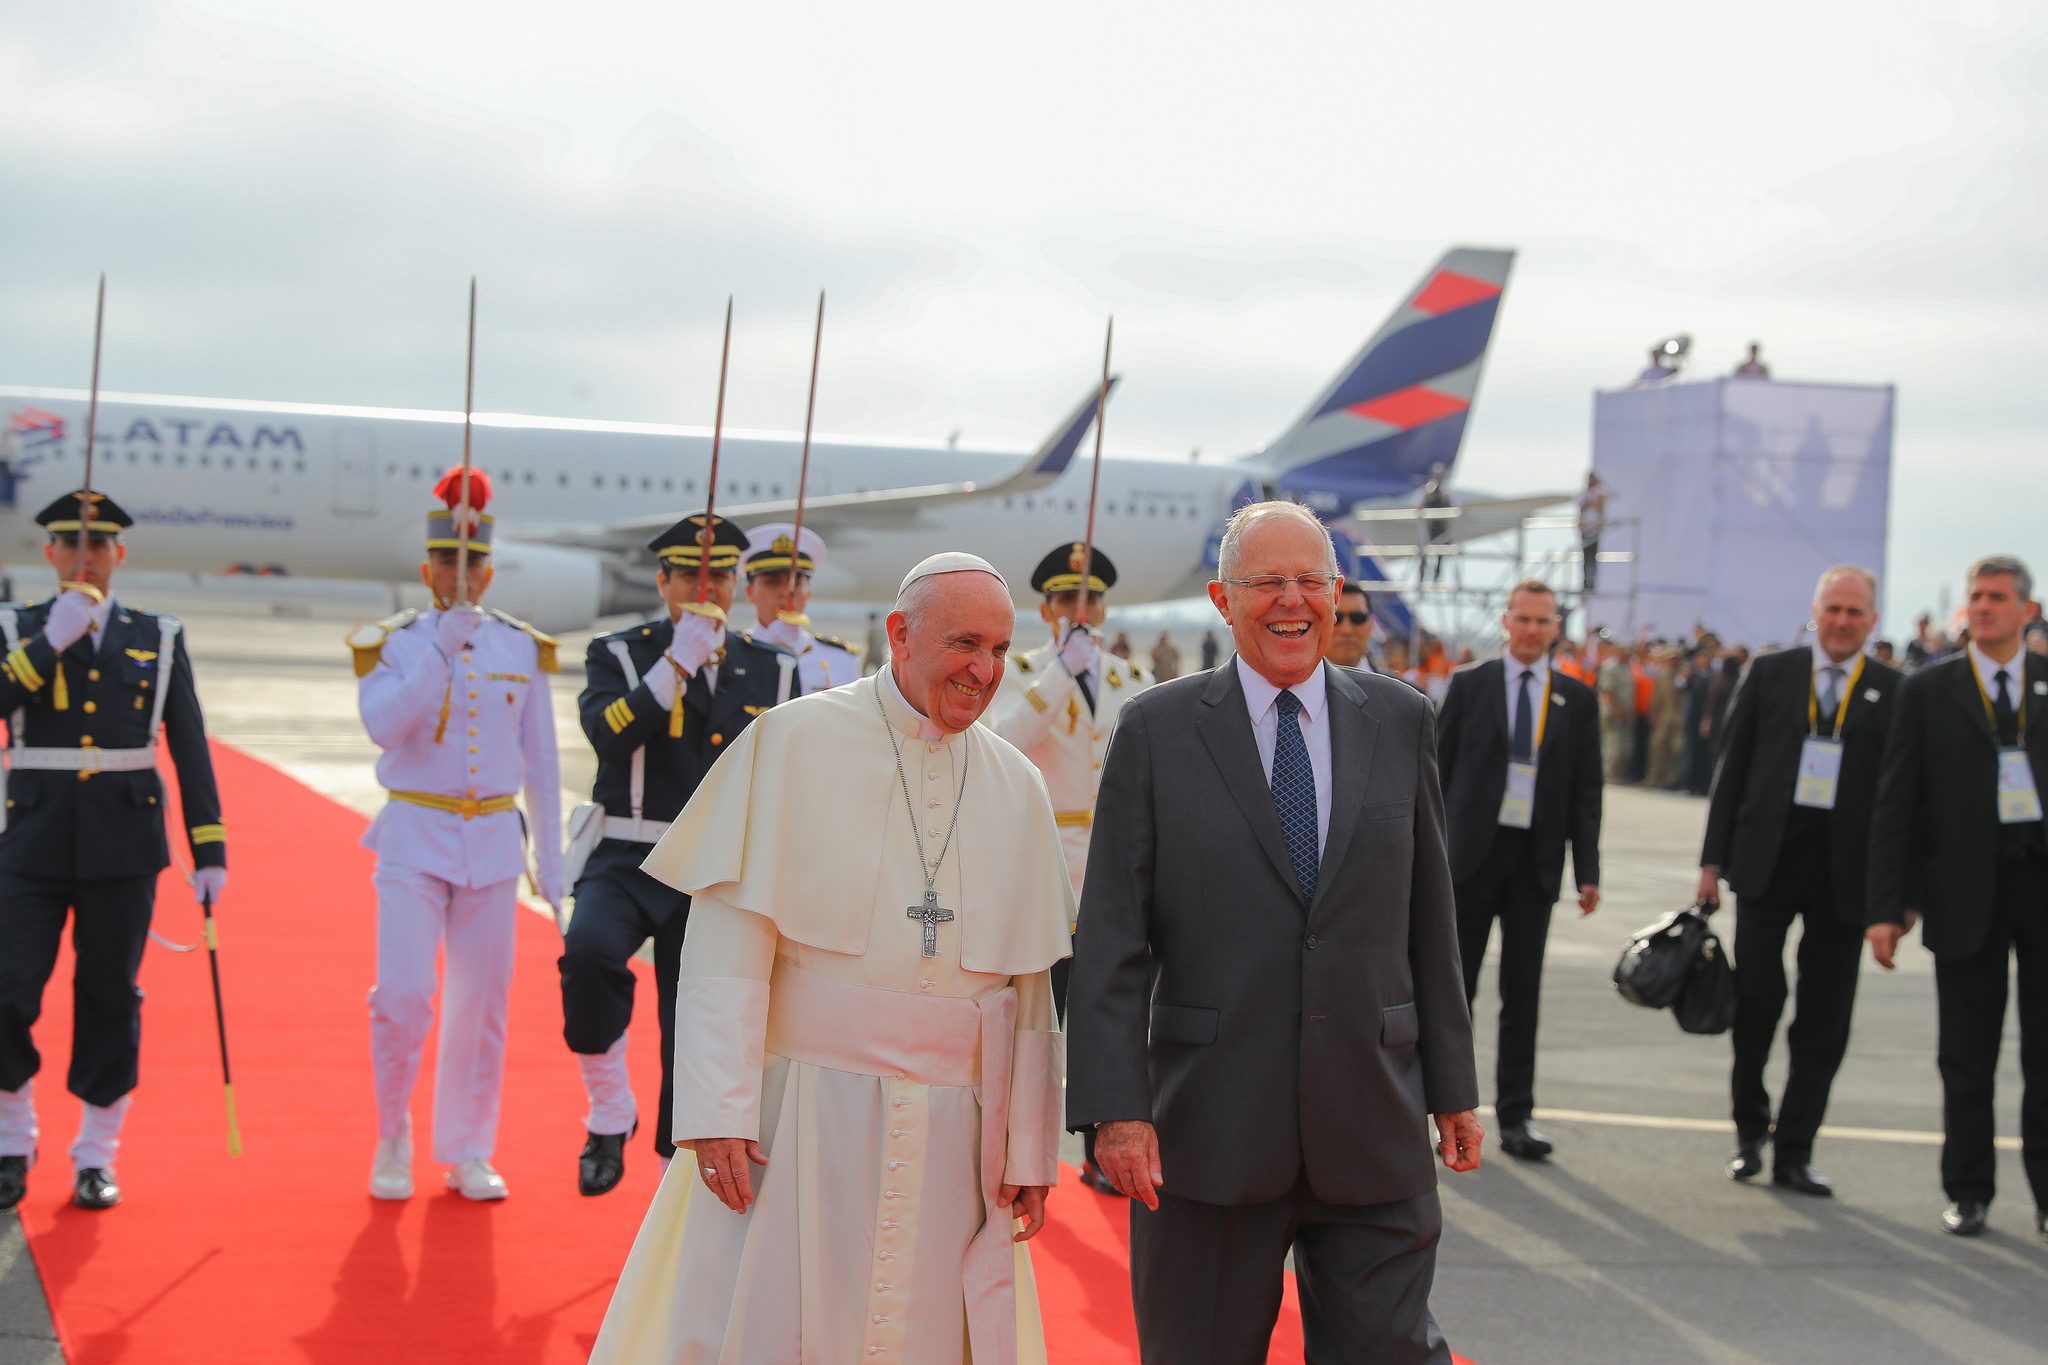 Kuczynski: “Recibimos con alegría y devoción al Papa Francisco, amigo del Perú”